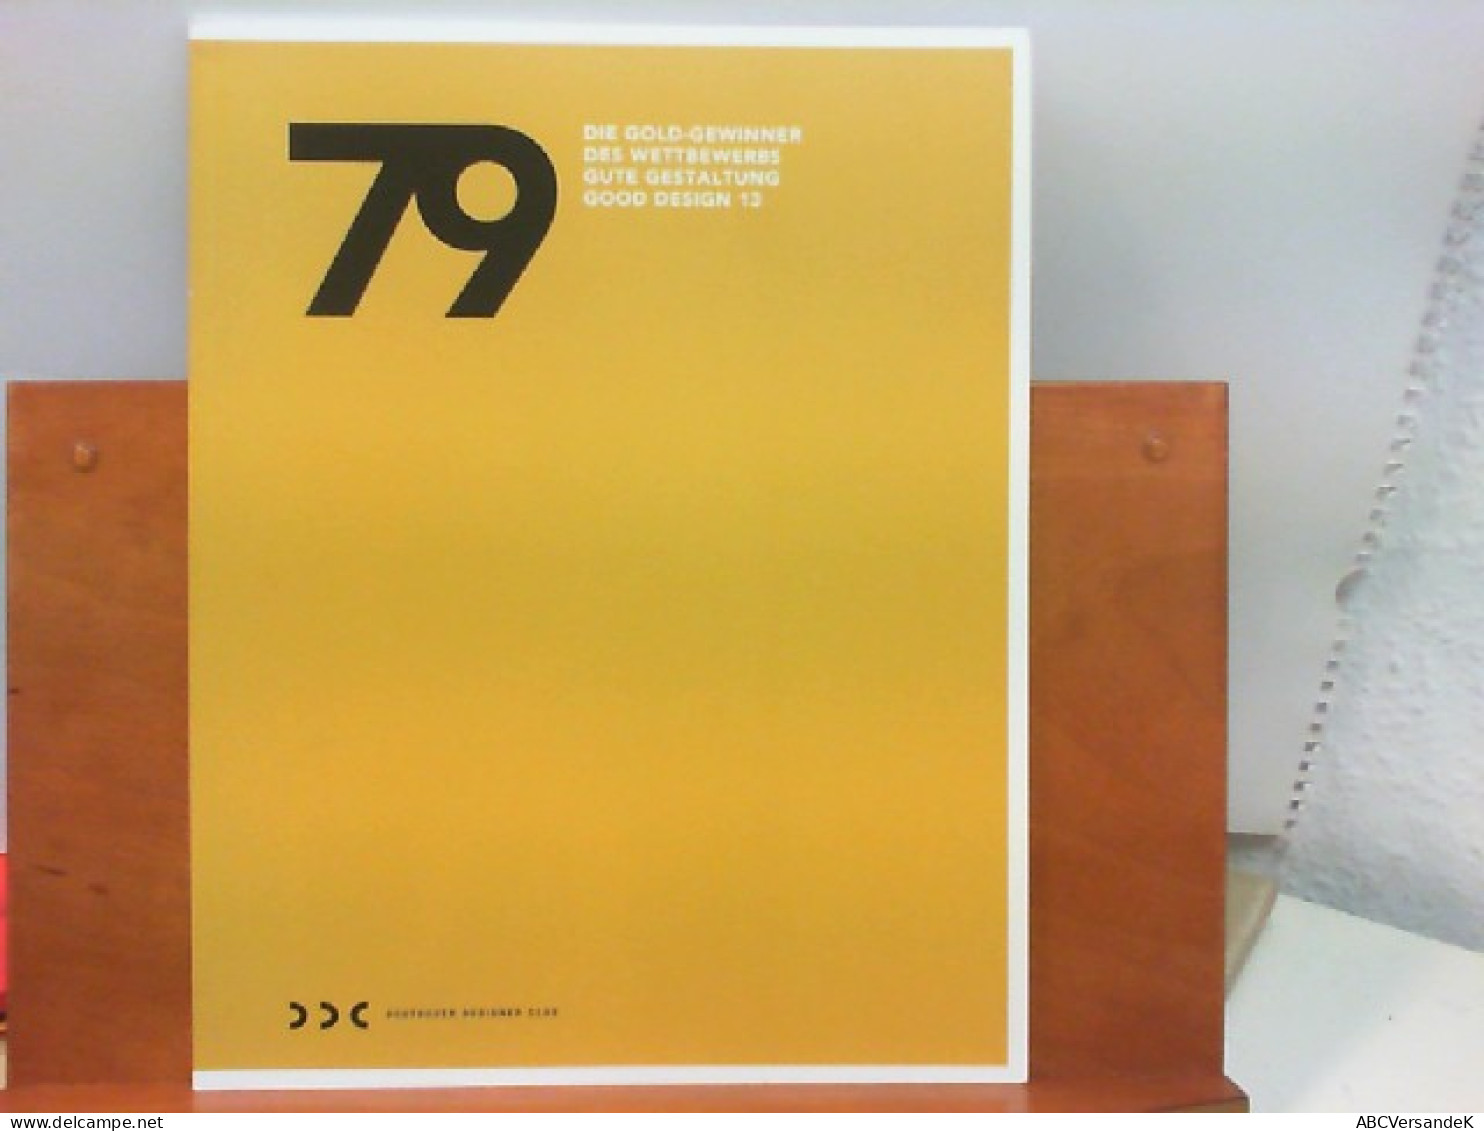 79 - Die Gold - Gewinner Des Wettbewerbs Gute Gestaltung Good Design 13 - Grafismo & Diseño